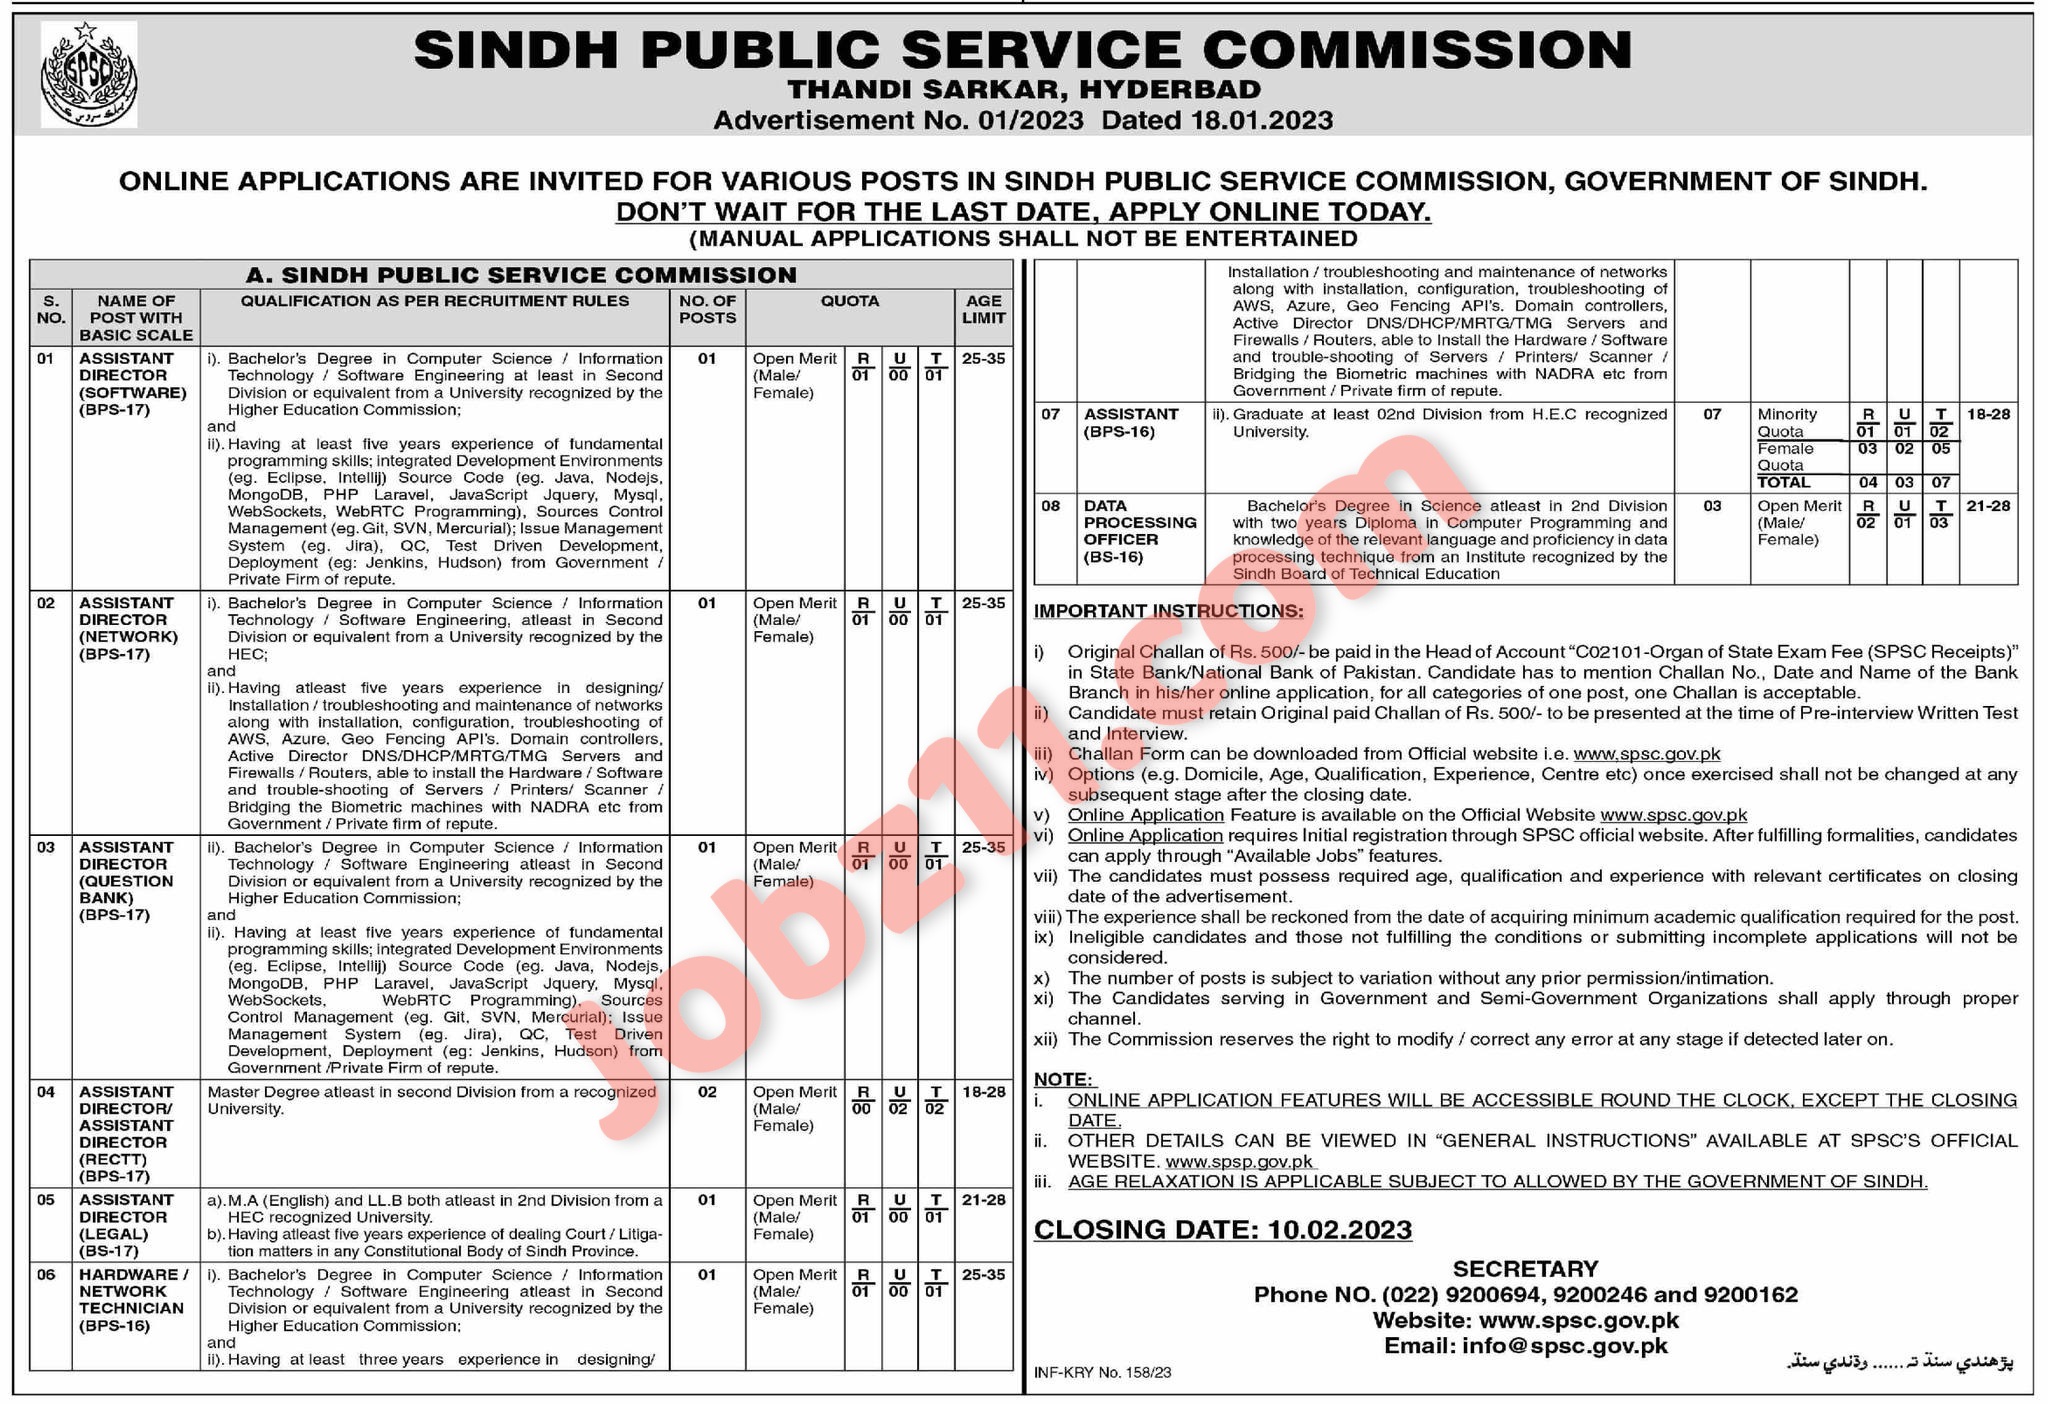 SPSC Jobs 2023 Sindh Public Service Commission Ad 01 2023